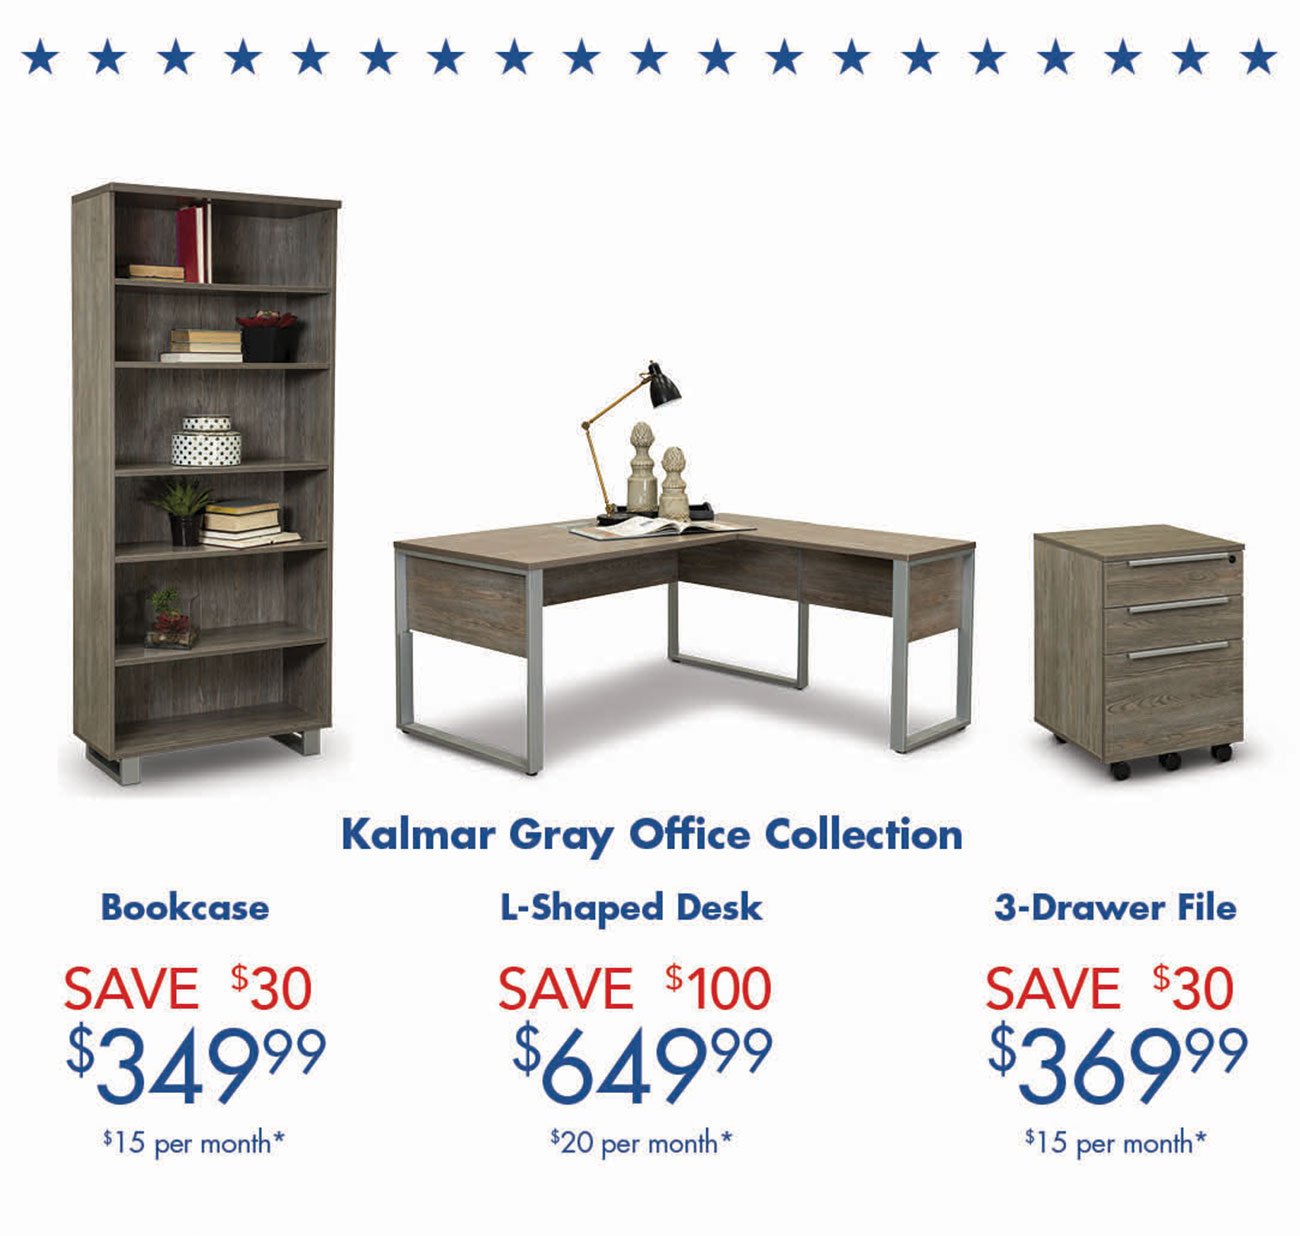 Kalmar-Gray-Office-Collection